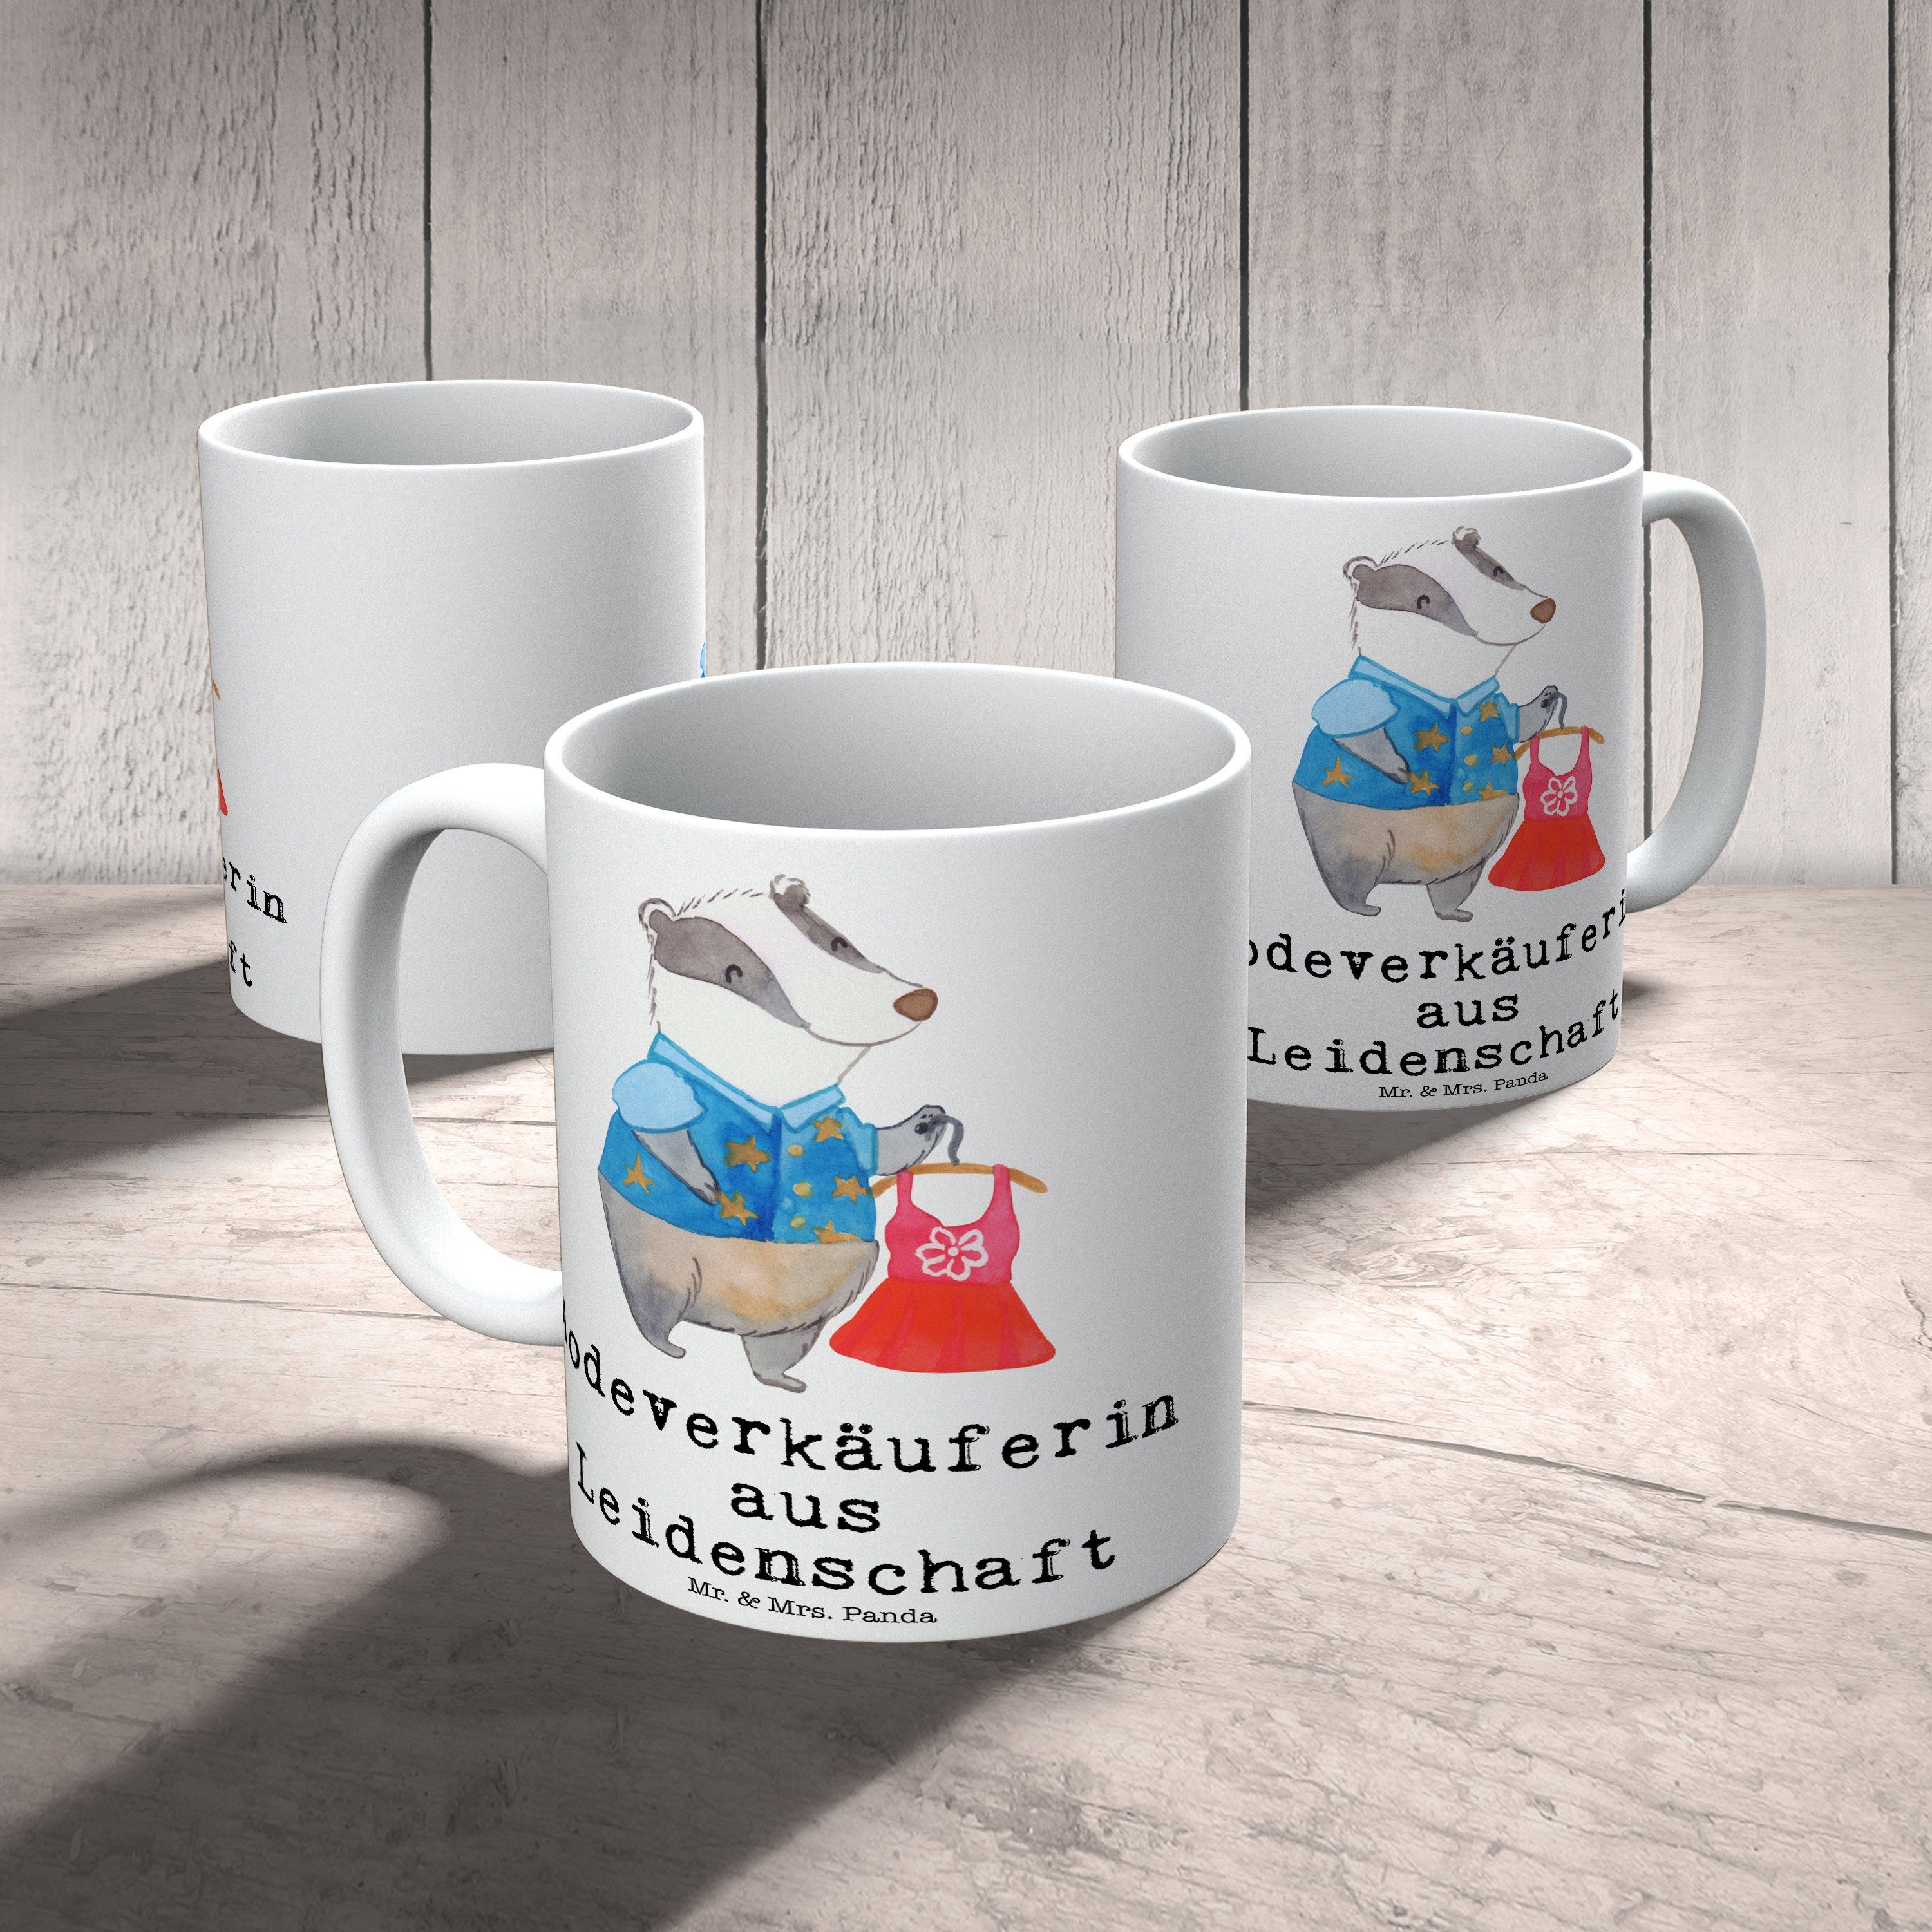 Mr. & Mrs. Sprü, Leidenschaft Panda Weiß Tasse Keramik - - Modeverkäuferin Rente, Geschenk, aus Tasse